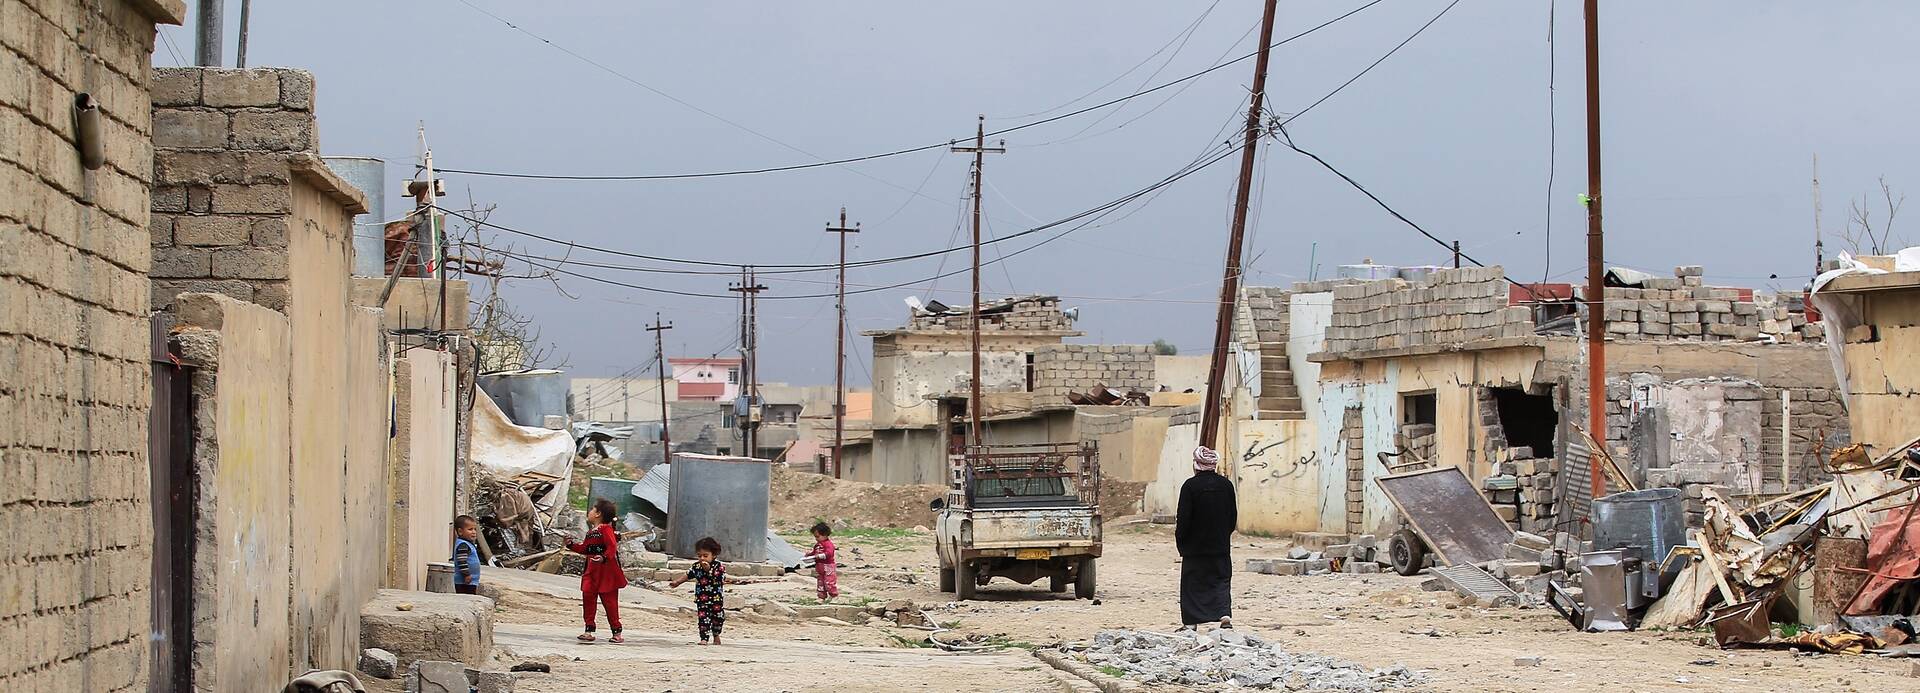 Durch Krieg zerstörtes Dorf im Irak